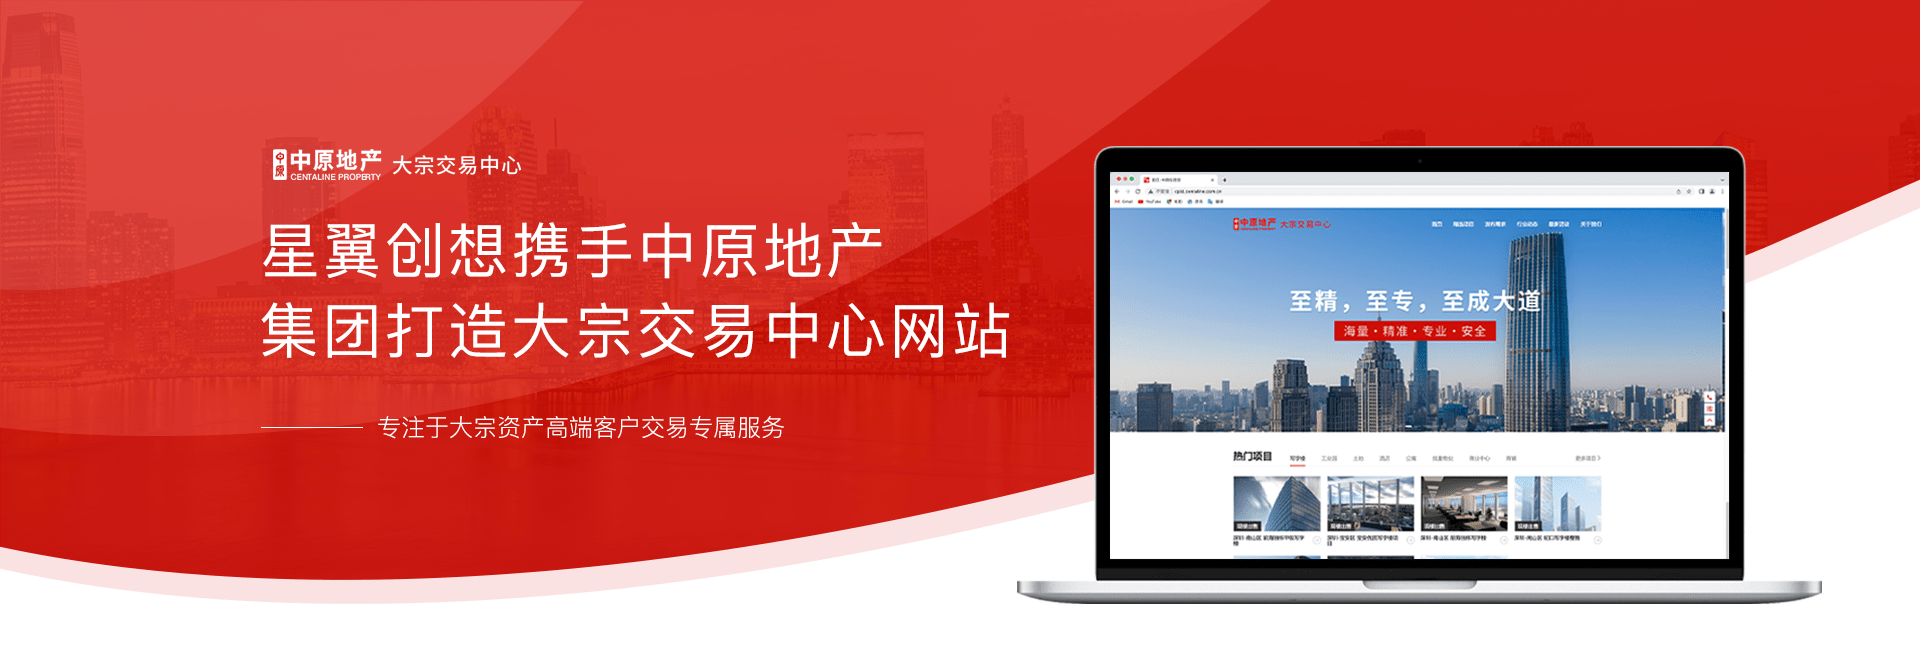 中原地产集团官方网站设计开发